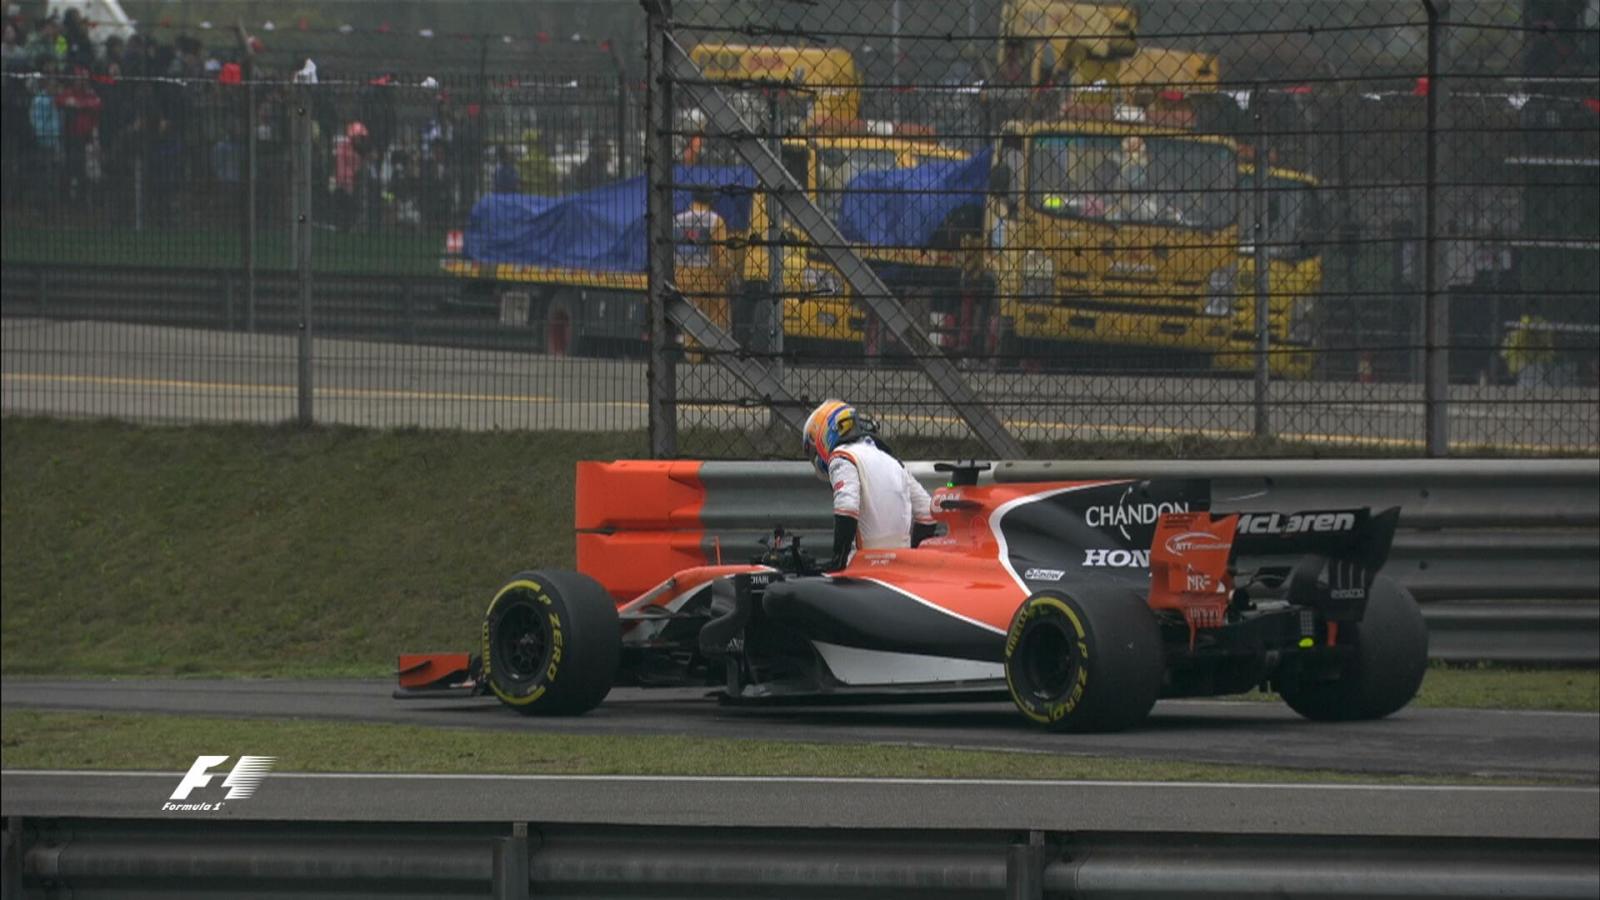 Фернандо Алонсо (McLaren) покидает болид